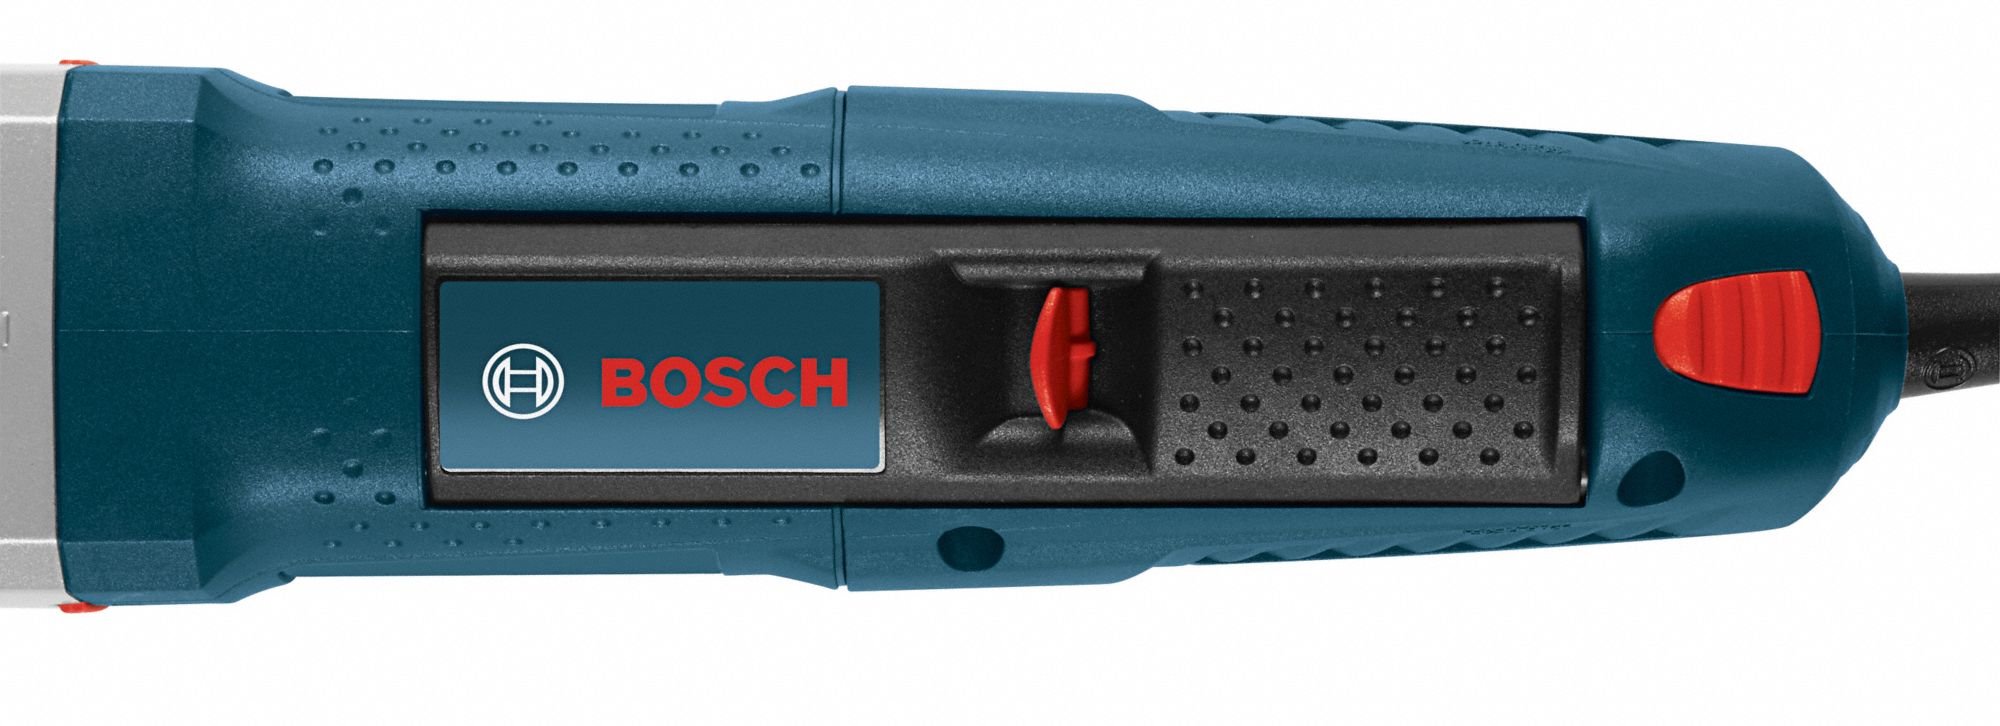 Bosch GWS13-50VSP Corded Electric 5" Angle Grinder 120V for sale online 